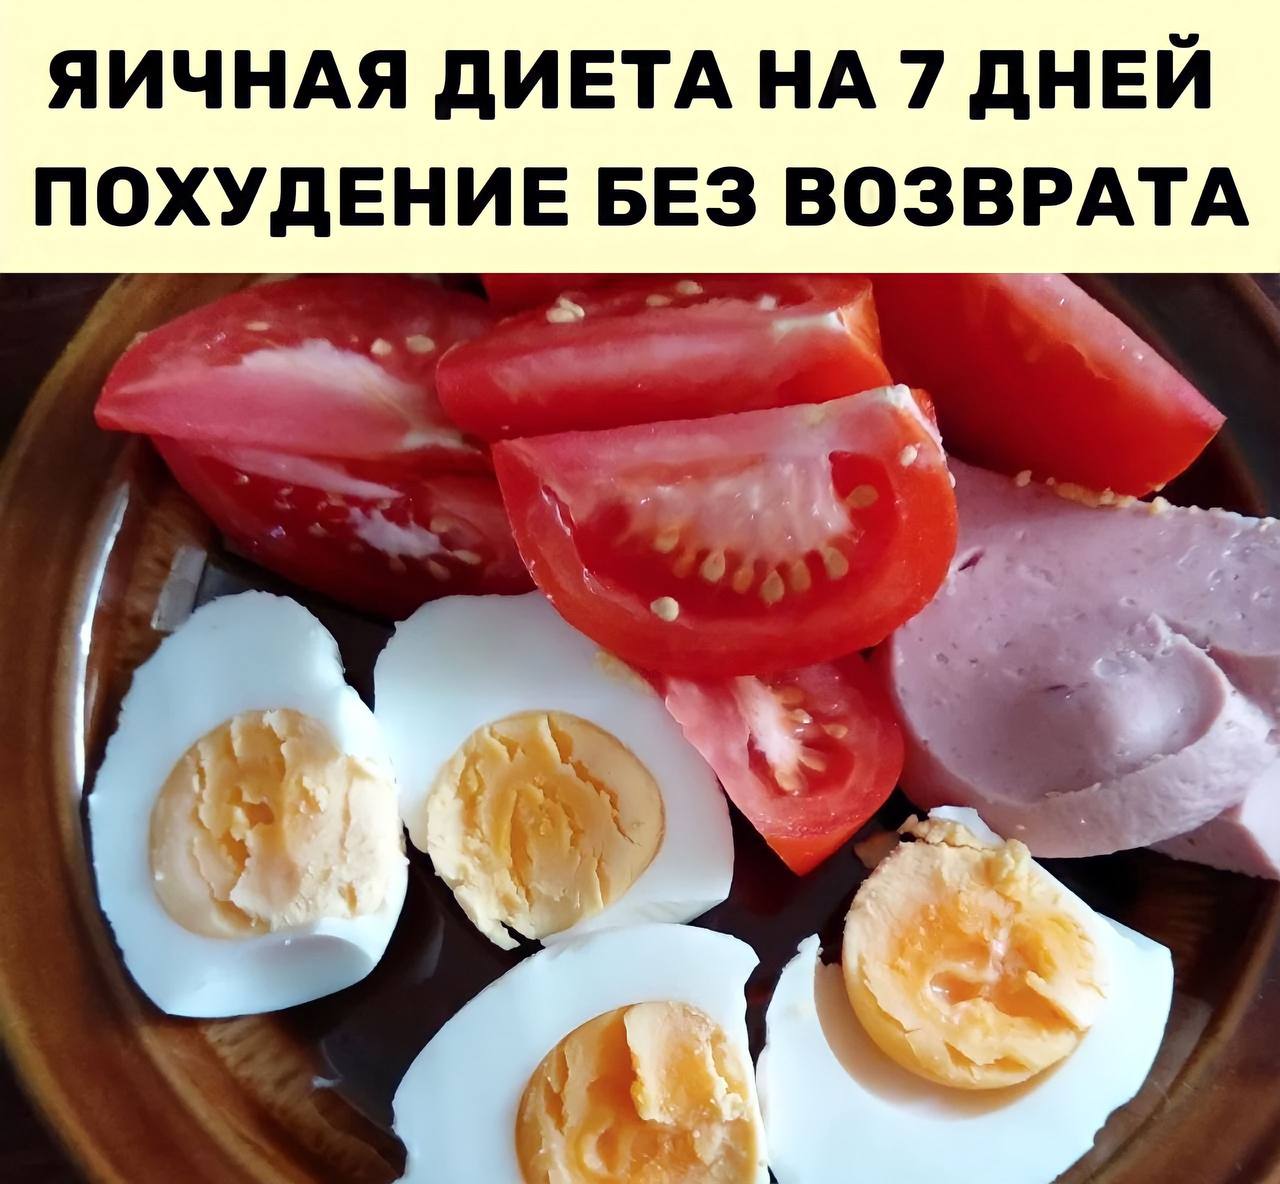 Сколько яиц нужно съесть на завтрак.